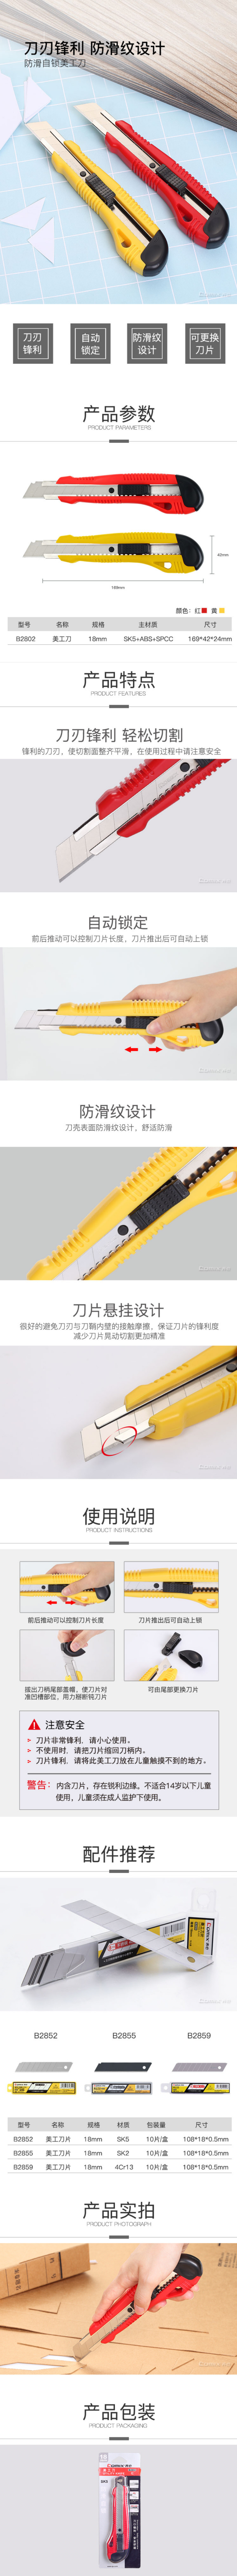 齐心 Comix B2802 美工刀 18mm 大号 黄色 2.jpg